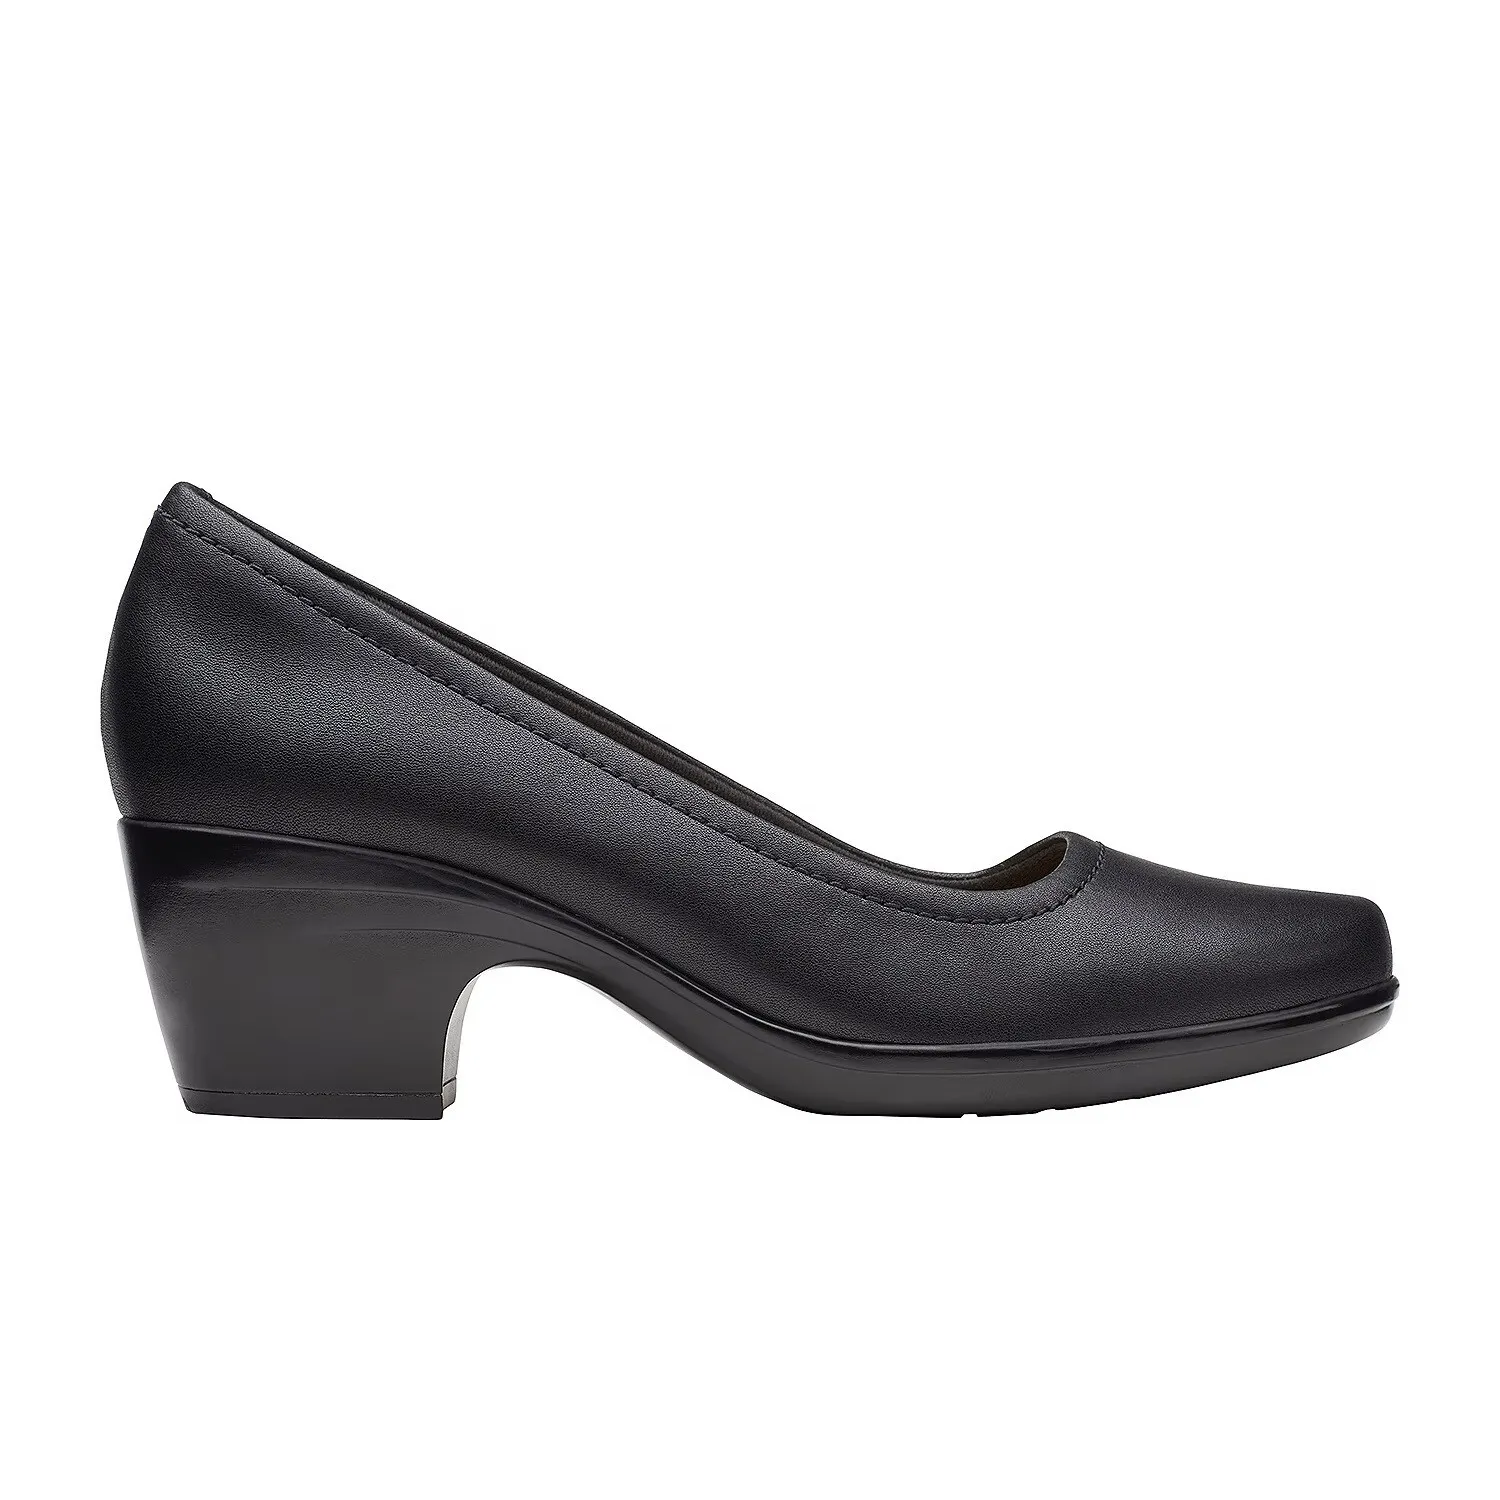 Женские туфли-лодочки Clarks, черные, цвет черный, размер 39 - фото 3